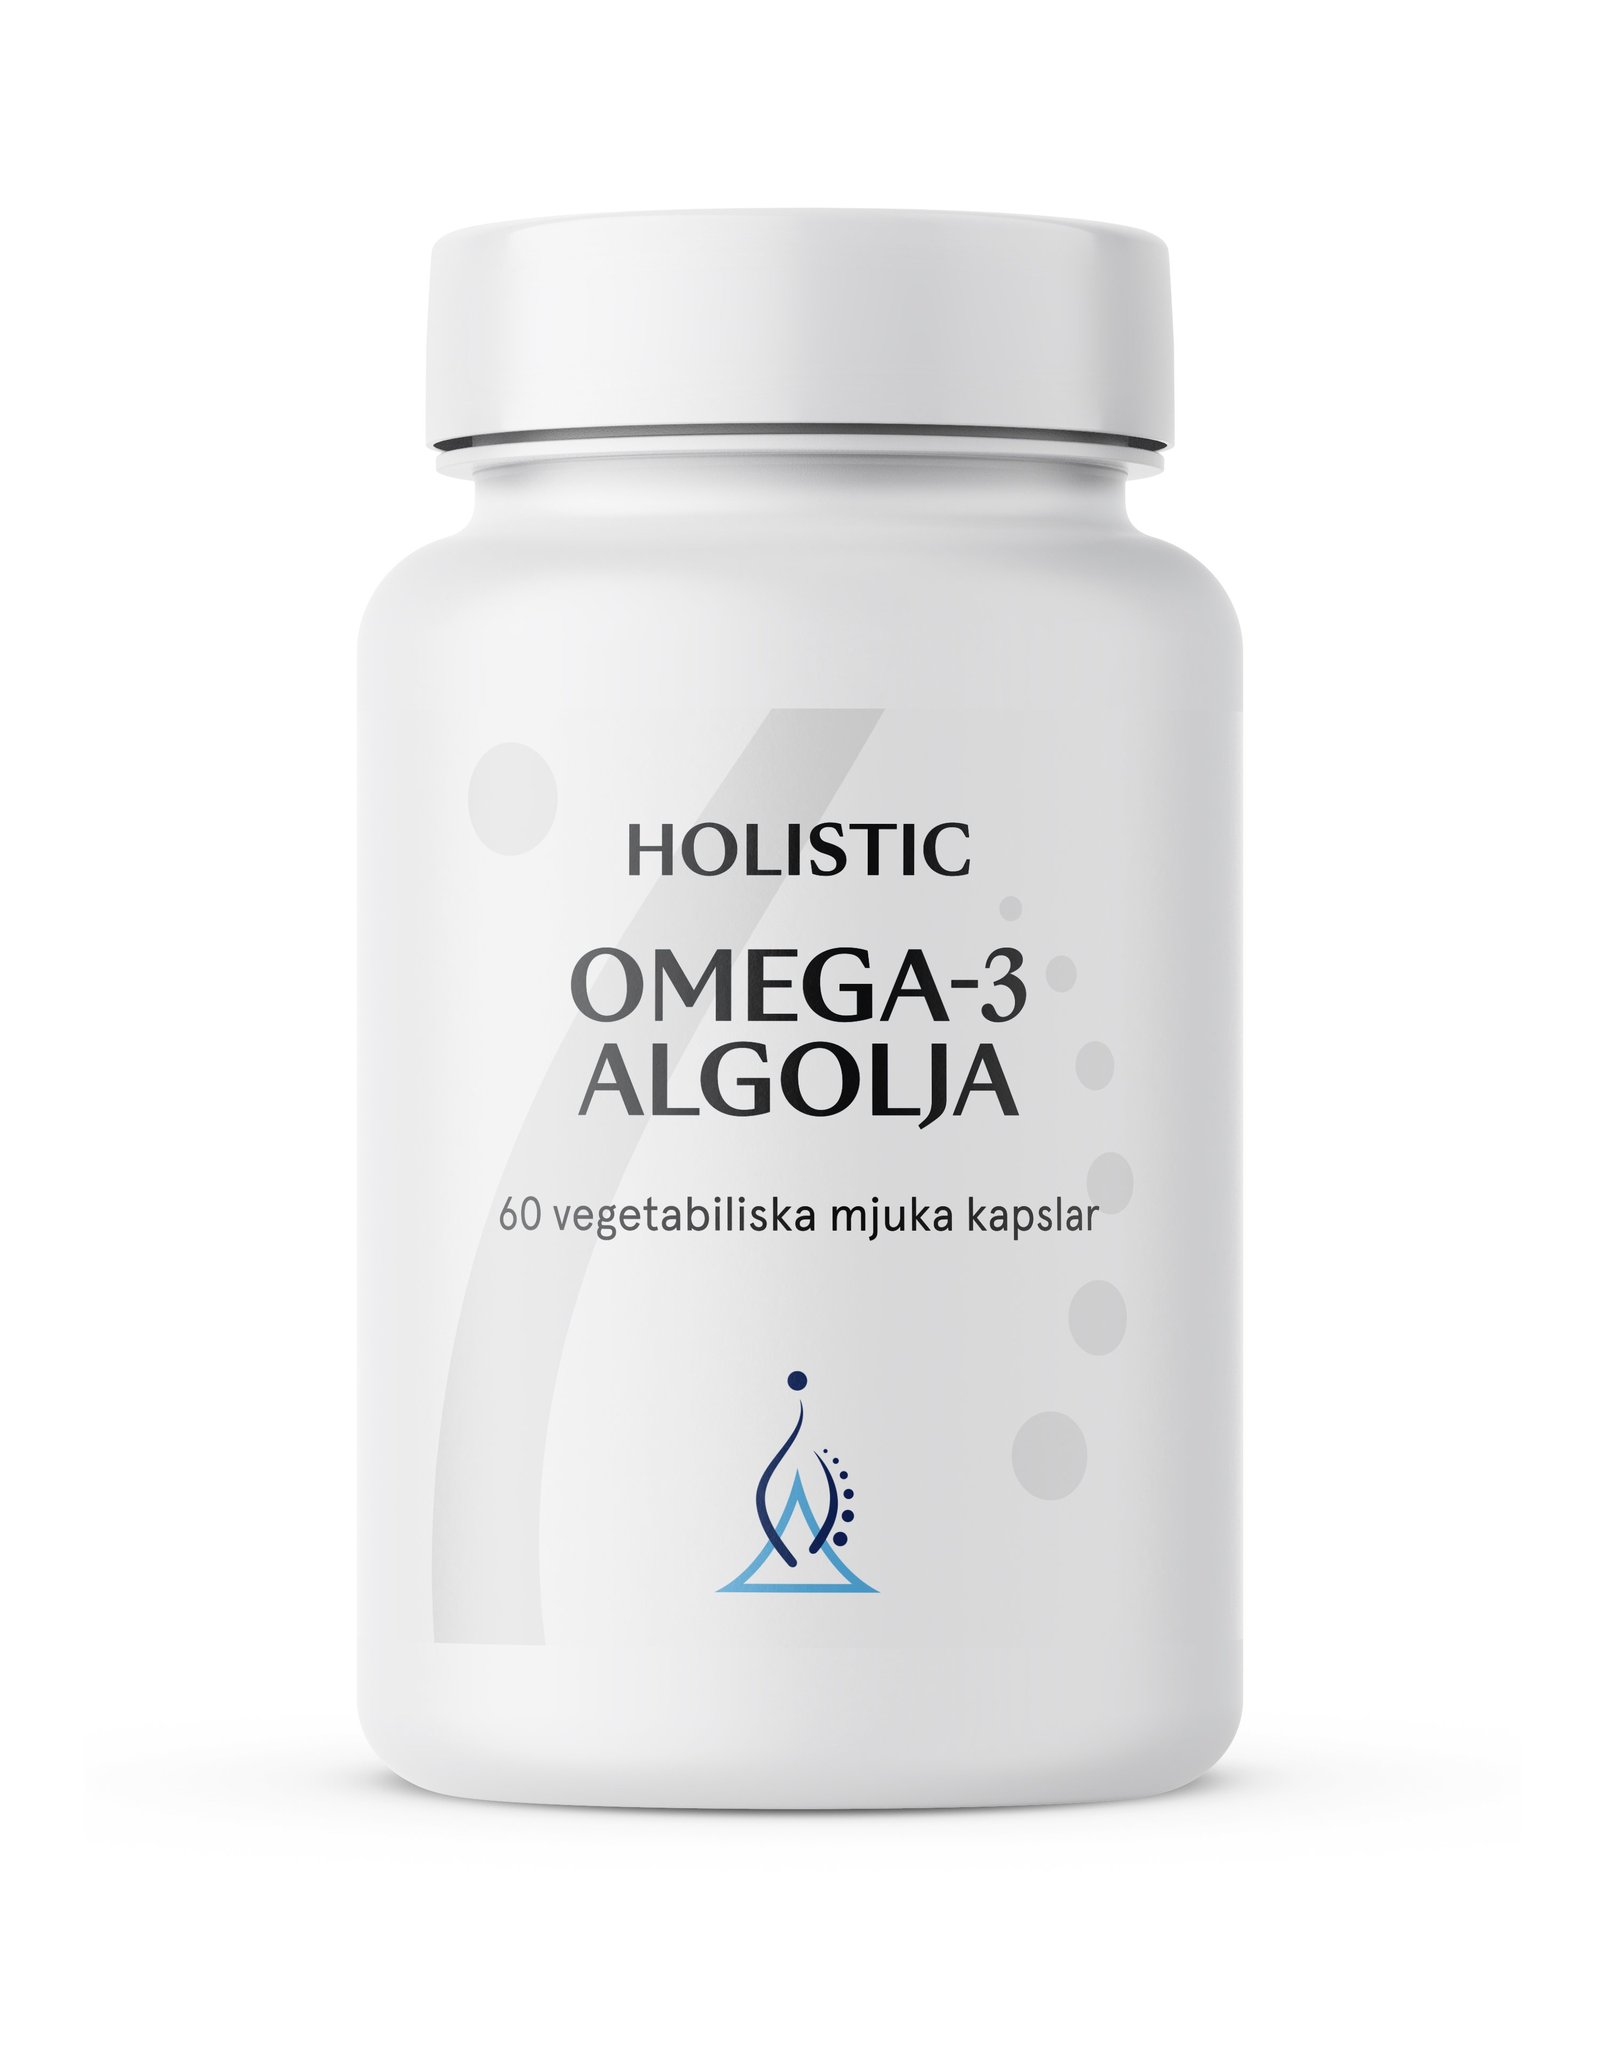 Holistic Omega-3 Vegan Algolja 60 vegetabiliska mjuka kapslar